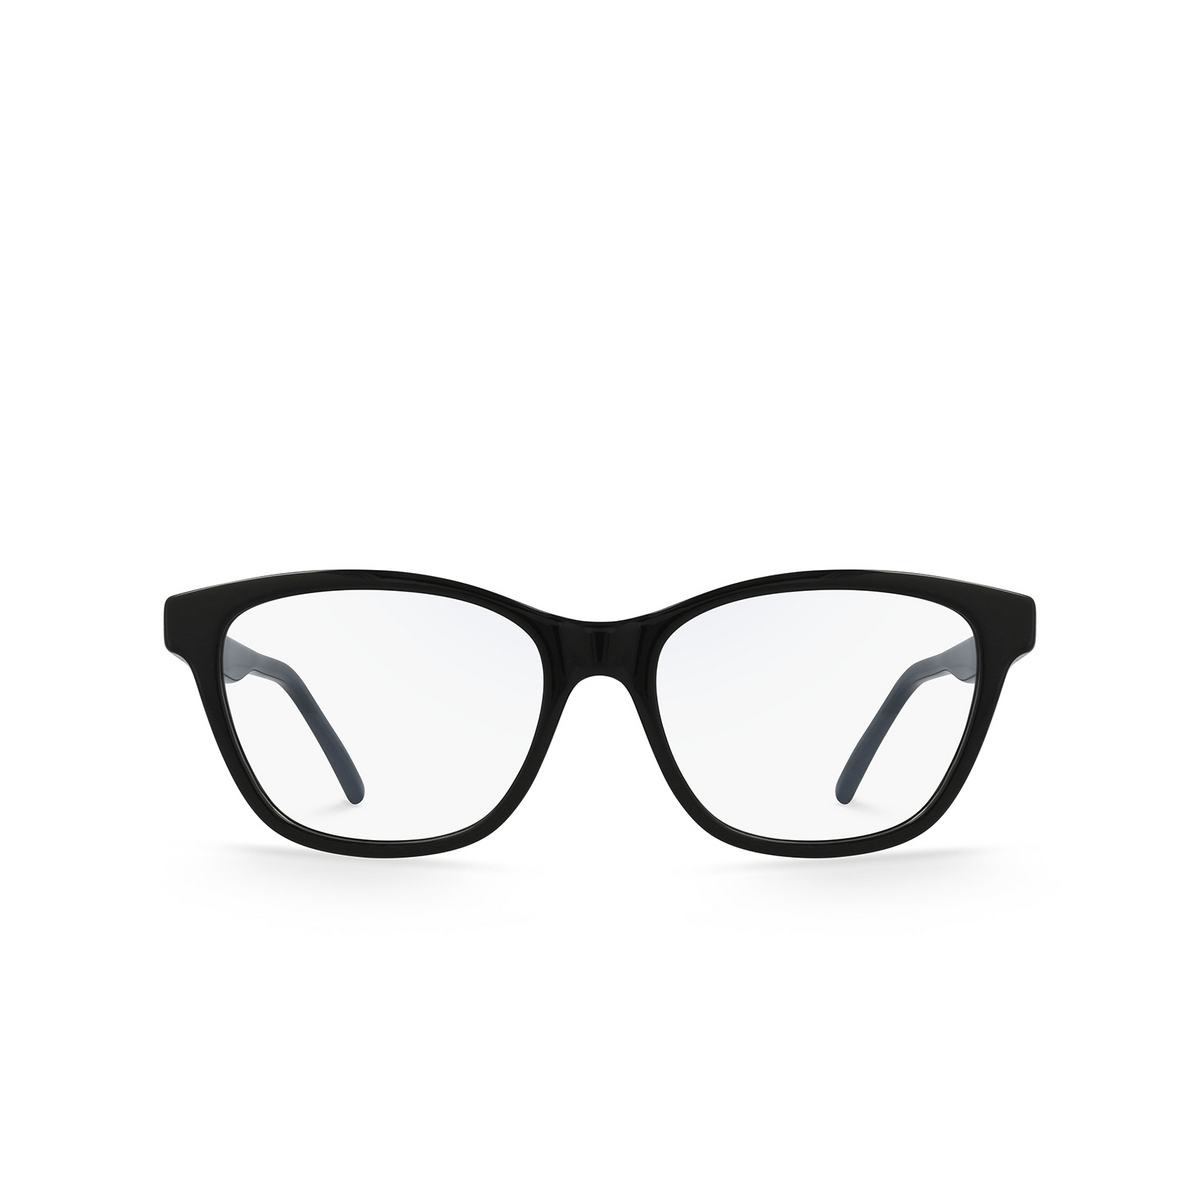 Saint Laurent® Cat-eye Eyeglasses: SL 338 color Black 001 - front view.